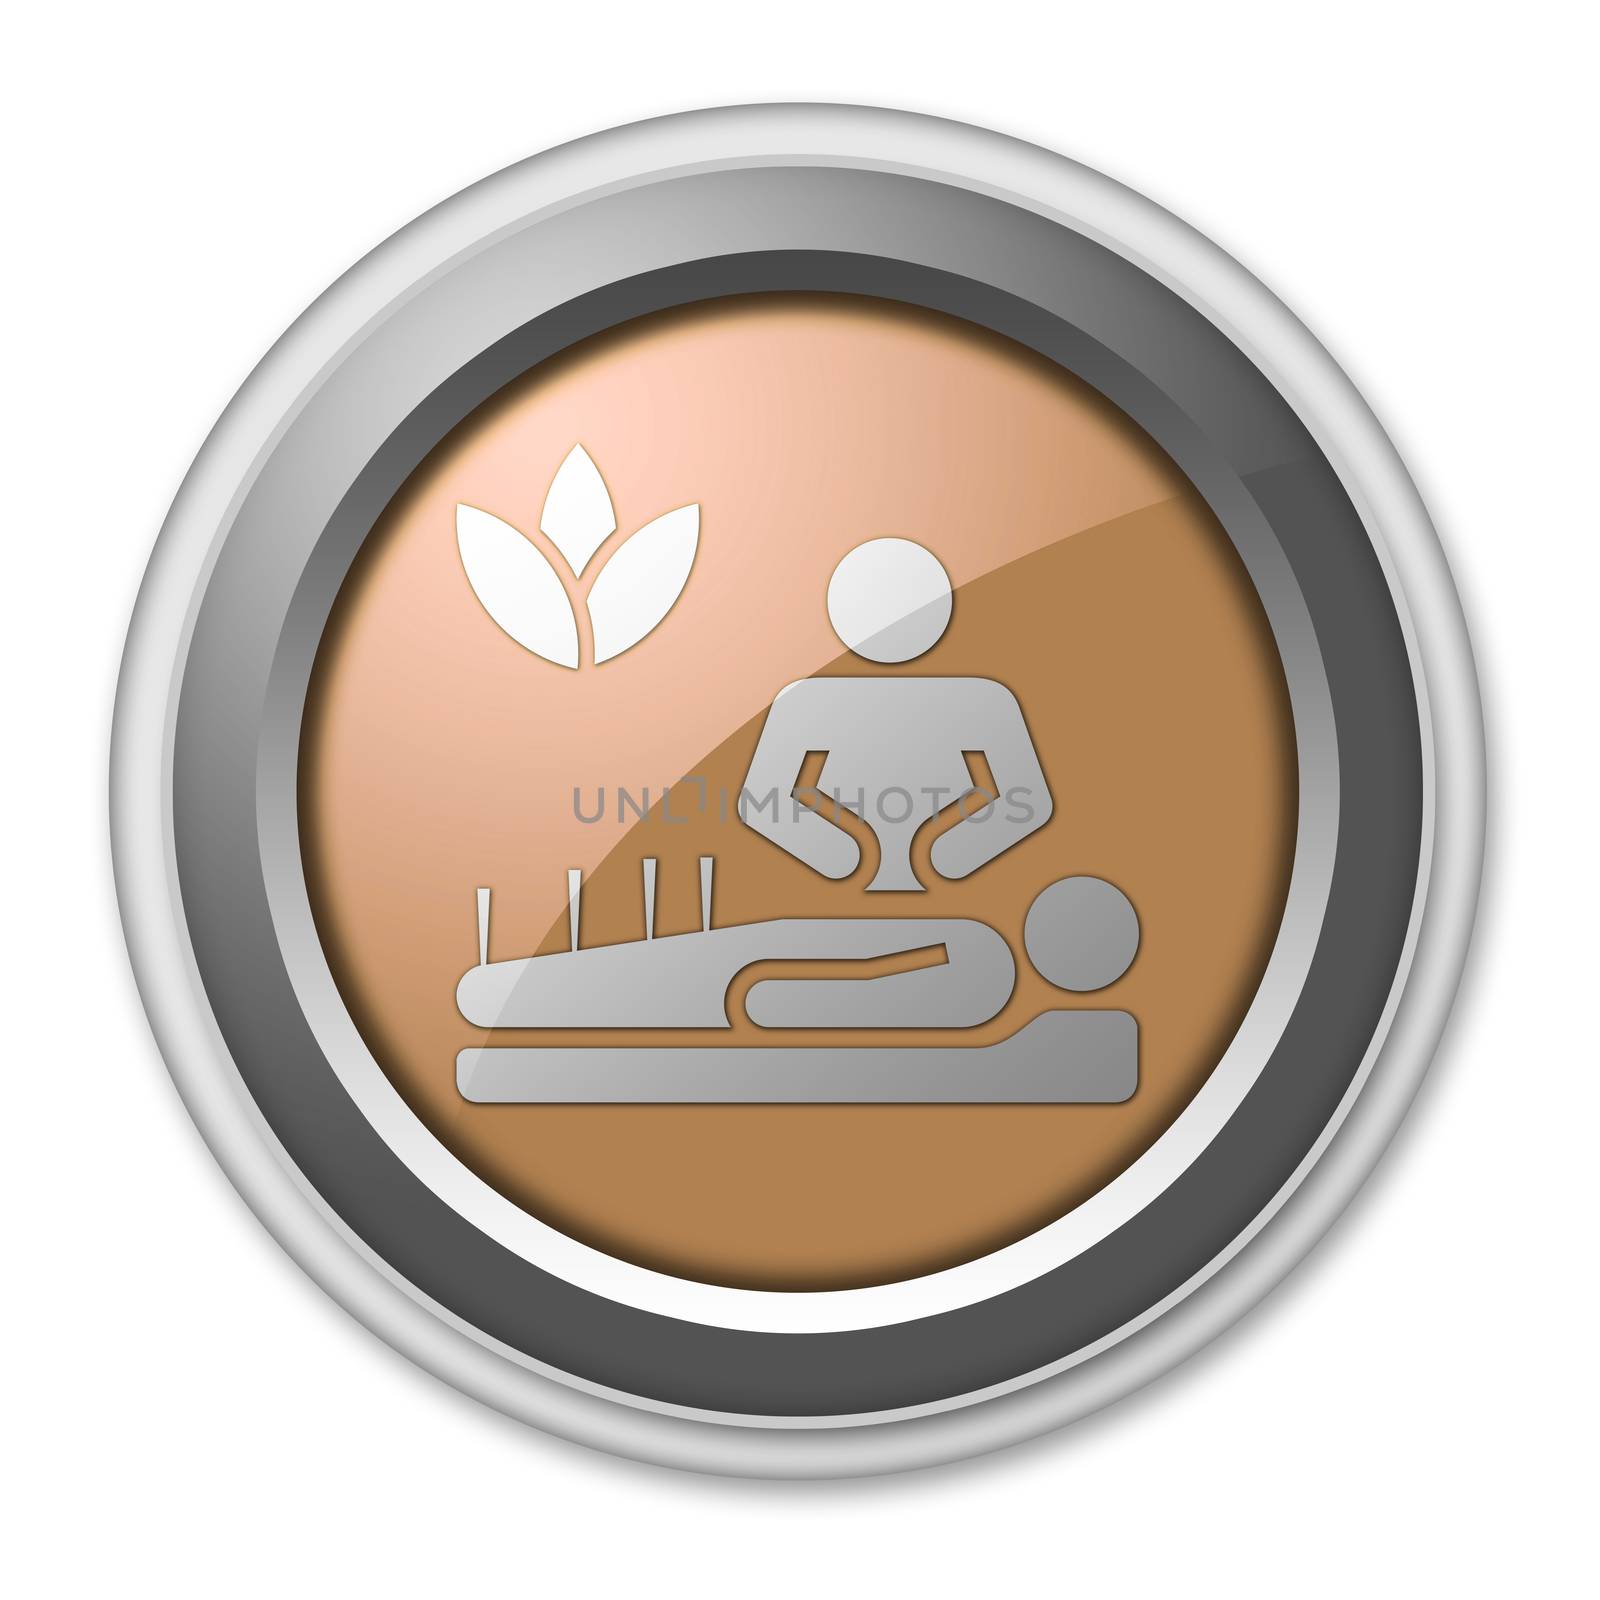 Icon, Button, Pictogram with Alternative Medicine symbol